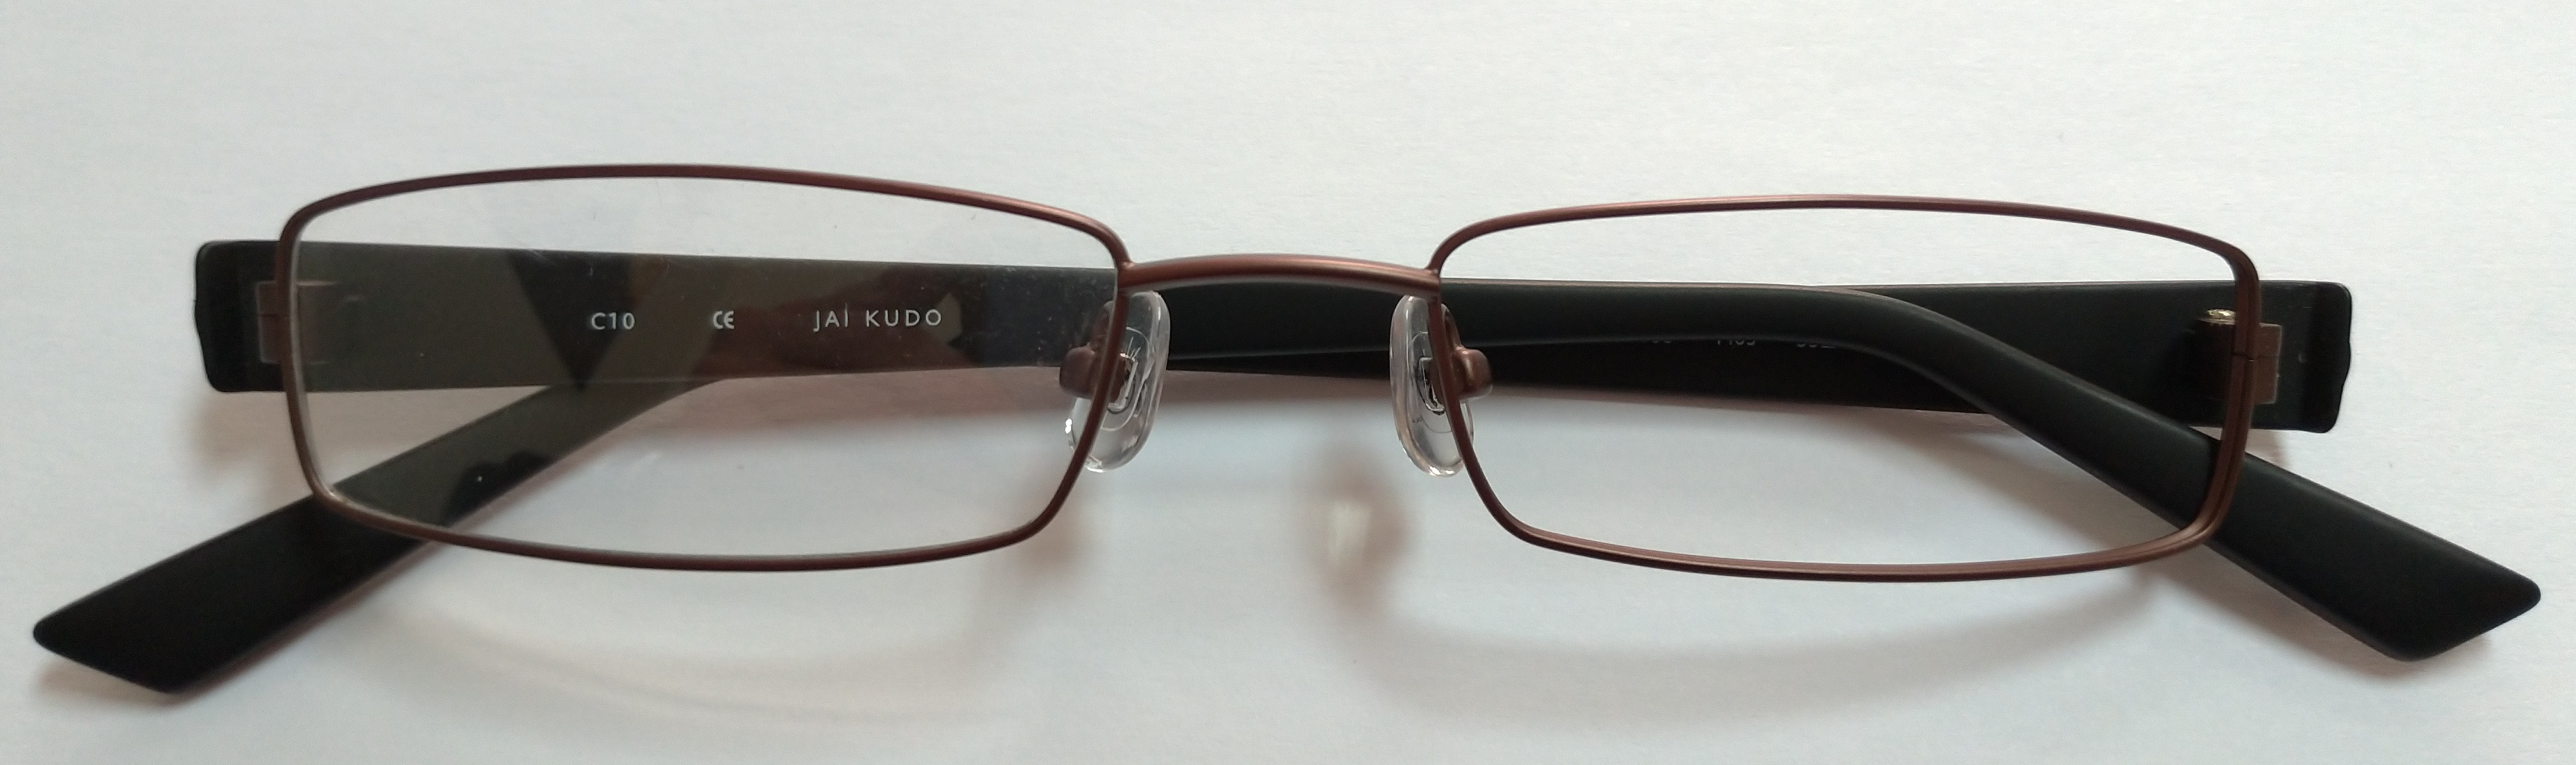 okuliarové rámčeky pánske JAI KUDO 536 M03 53-18-145 mm DMOC:2600 Kč AKCE - Lekáreň a zdravie